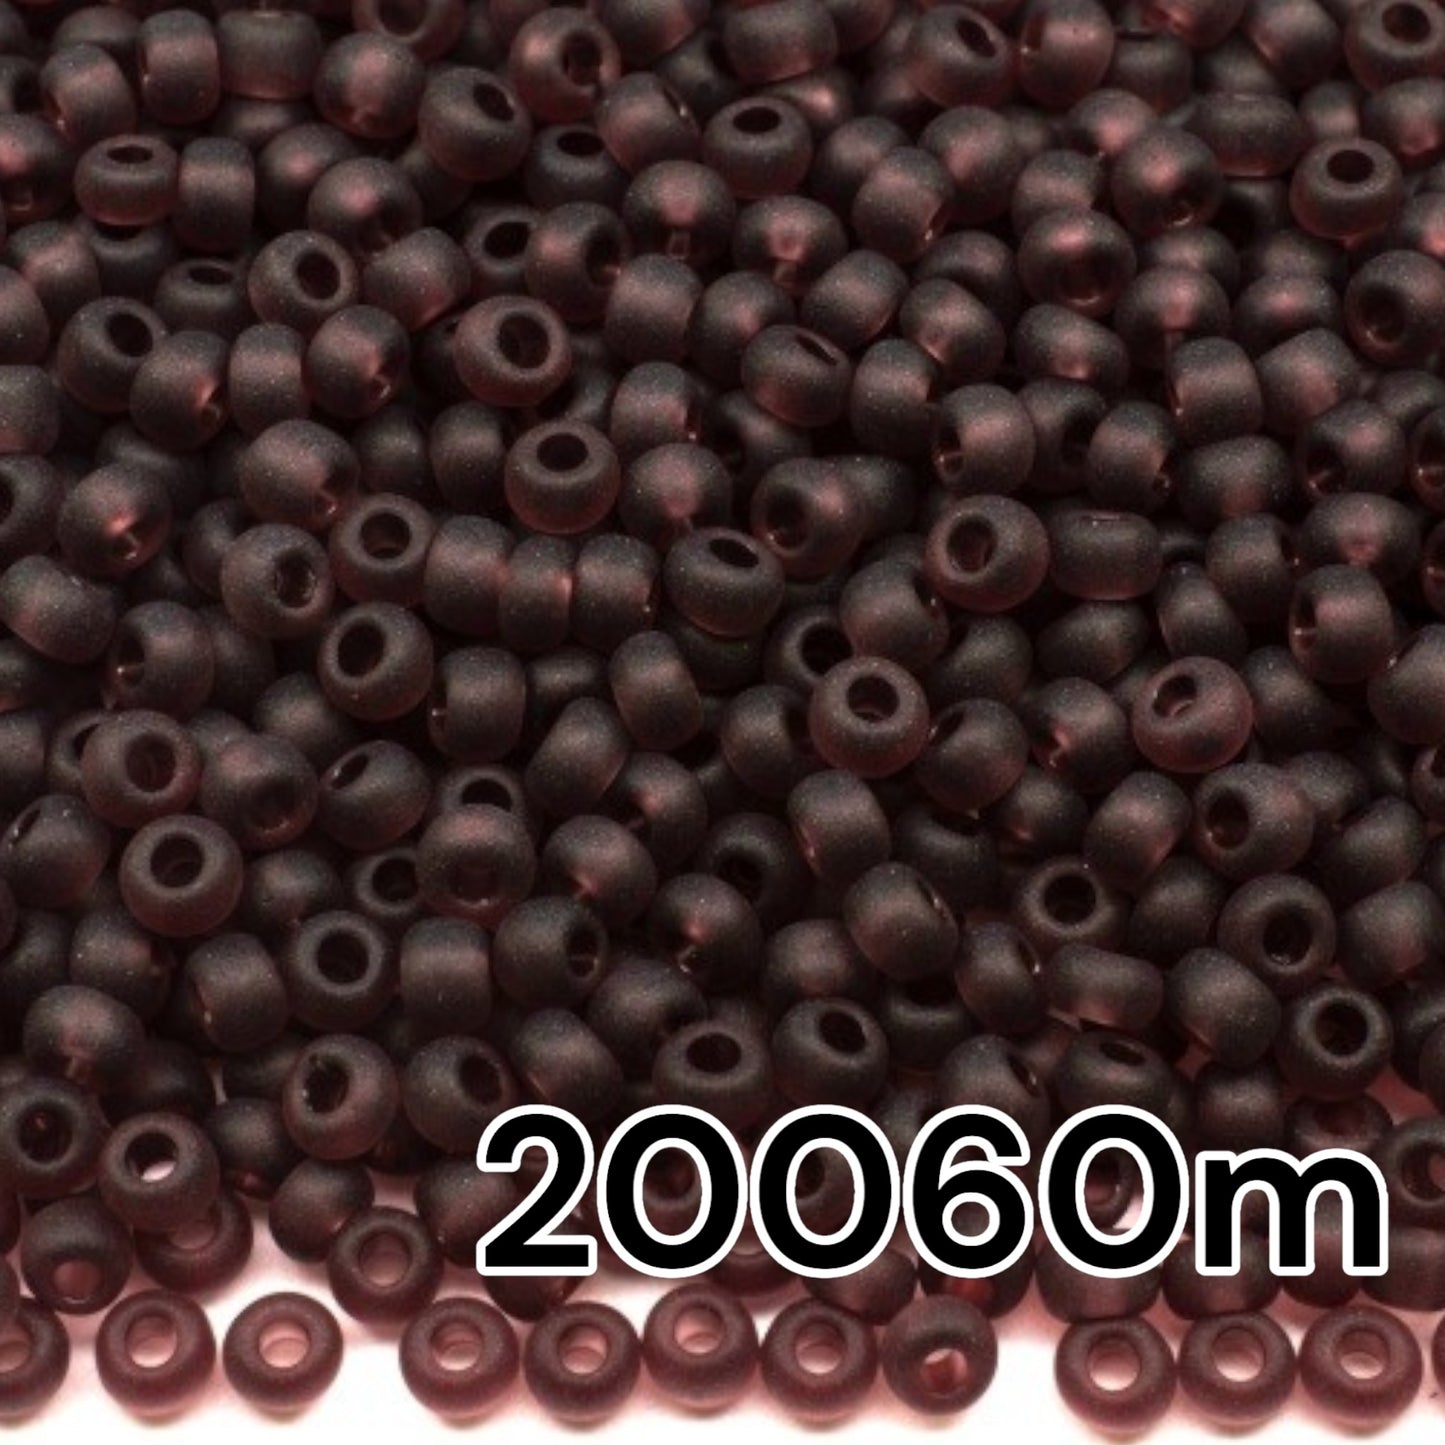 20060m Czech Seed Beads Preciosa Rocailles Transparent Matte